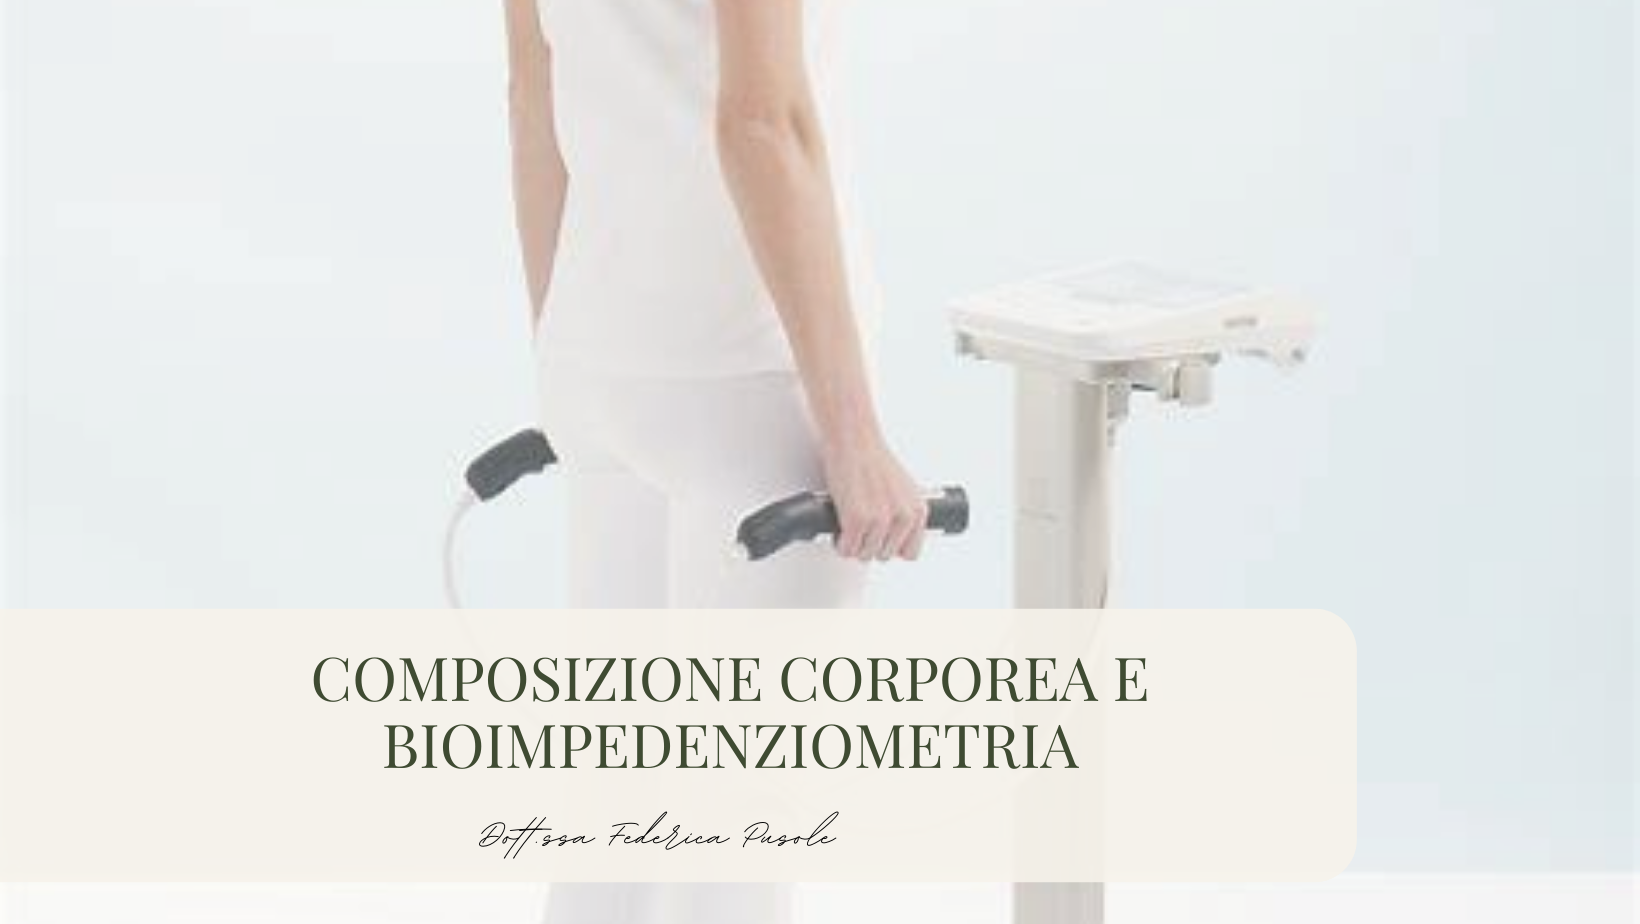 Bioimpedenziometria(BIA): Misurazione della Composizione Corporea